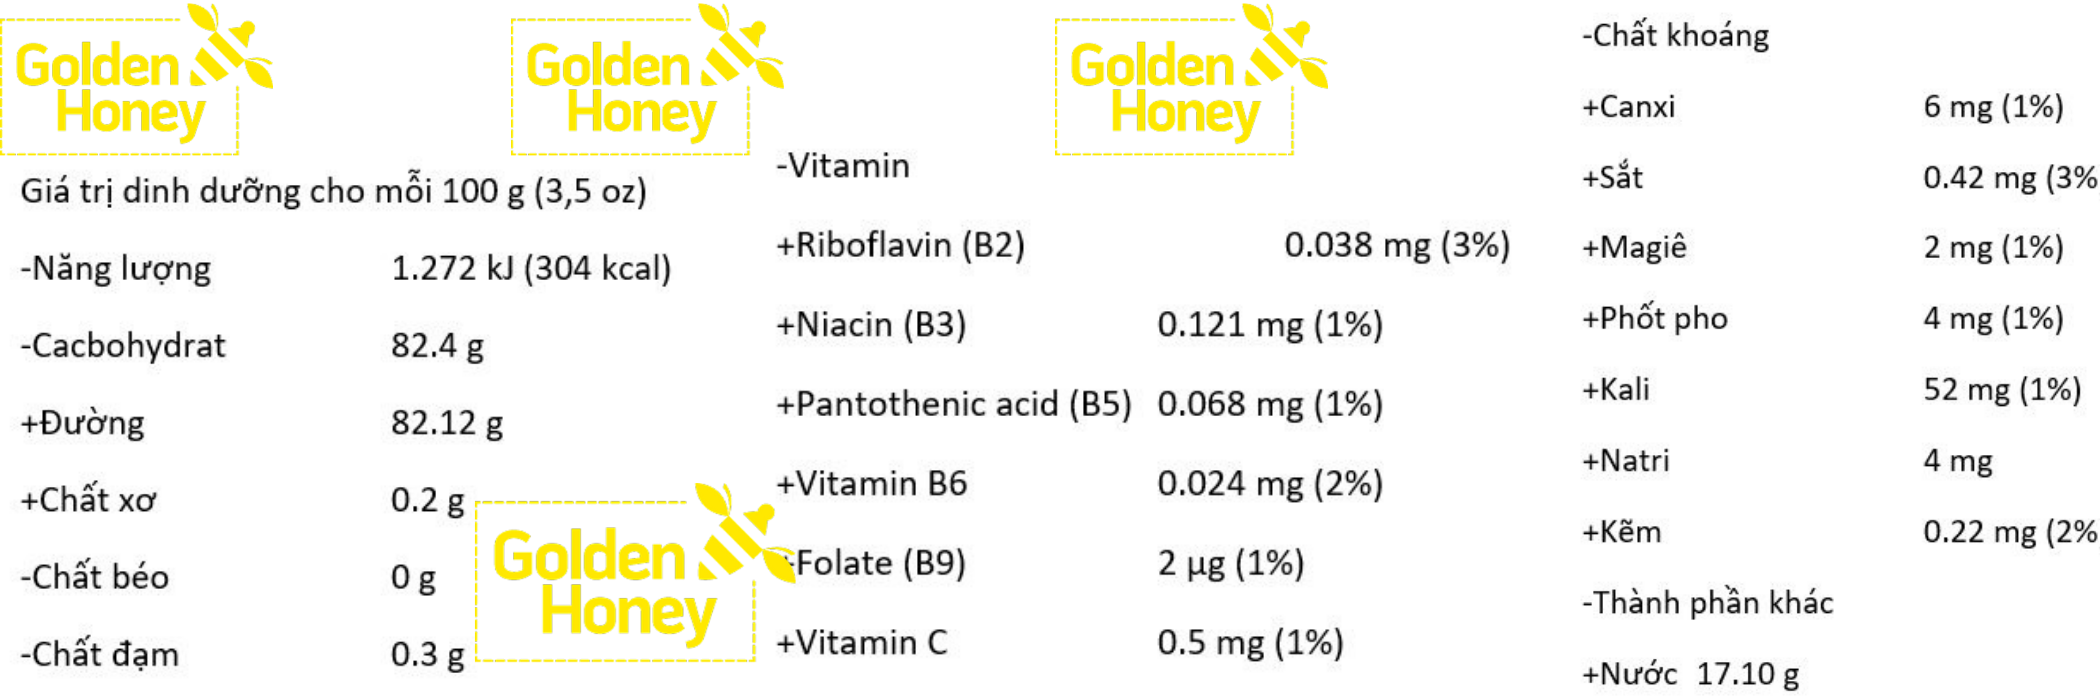 Mật Ong Nguyên Chất Hoa Cà Phê Golden Honey - Tốt Cho Sức Khỏe Tăng Hệ Miễn Dịch, Hỗ Trợ Chữa Dứt Điểm Ho, Giảm Nguy Cơ Bệnh Tim Mạch, Hỗ Trợ Giảm Mụn Trứng Cá, Sáng Đẹp Da Và Môi, Chế Biến Nhiều Thức Uống Và Món Ăn Ngon Bổ Dưỡng - Chai 500ml 1